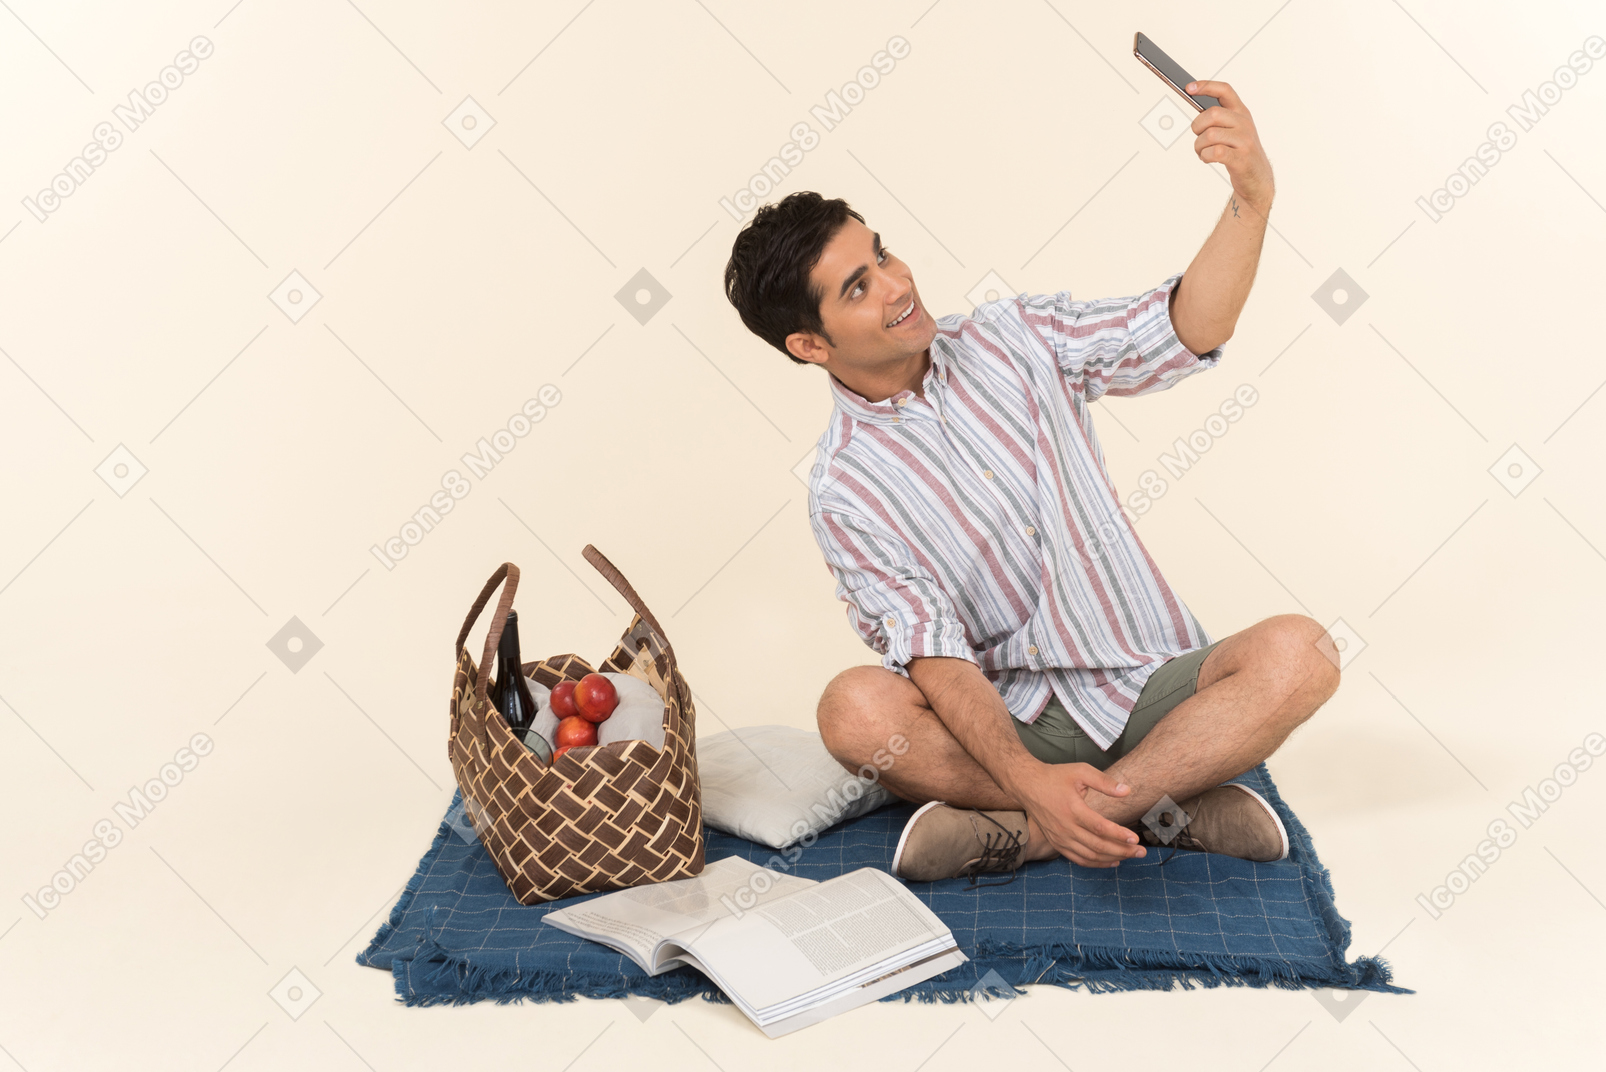 Jeune mec caucasien assis sur une couverture et faire un selfie